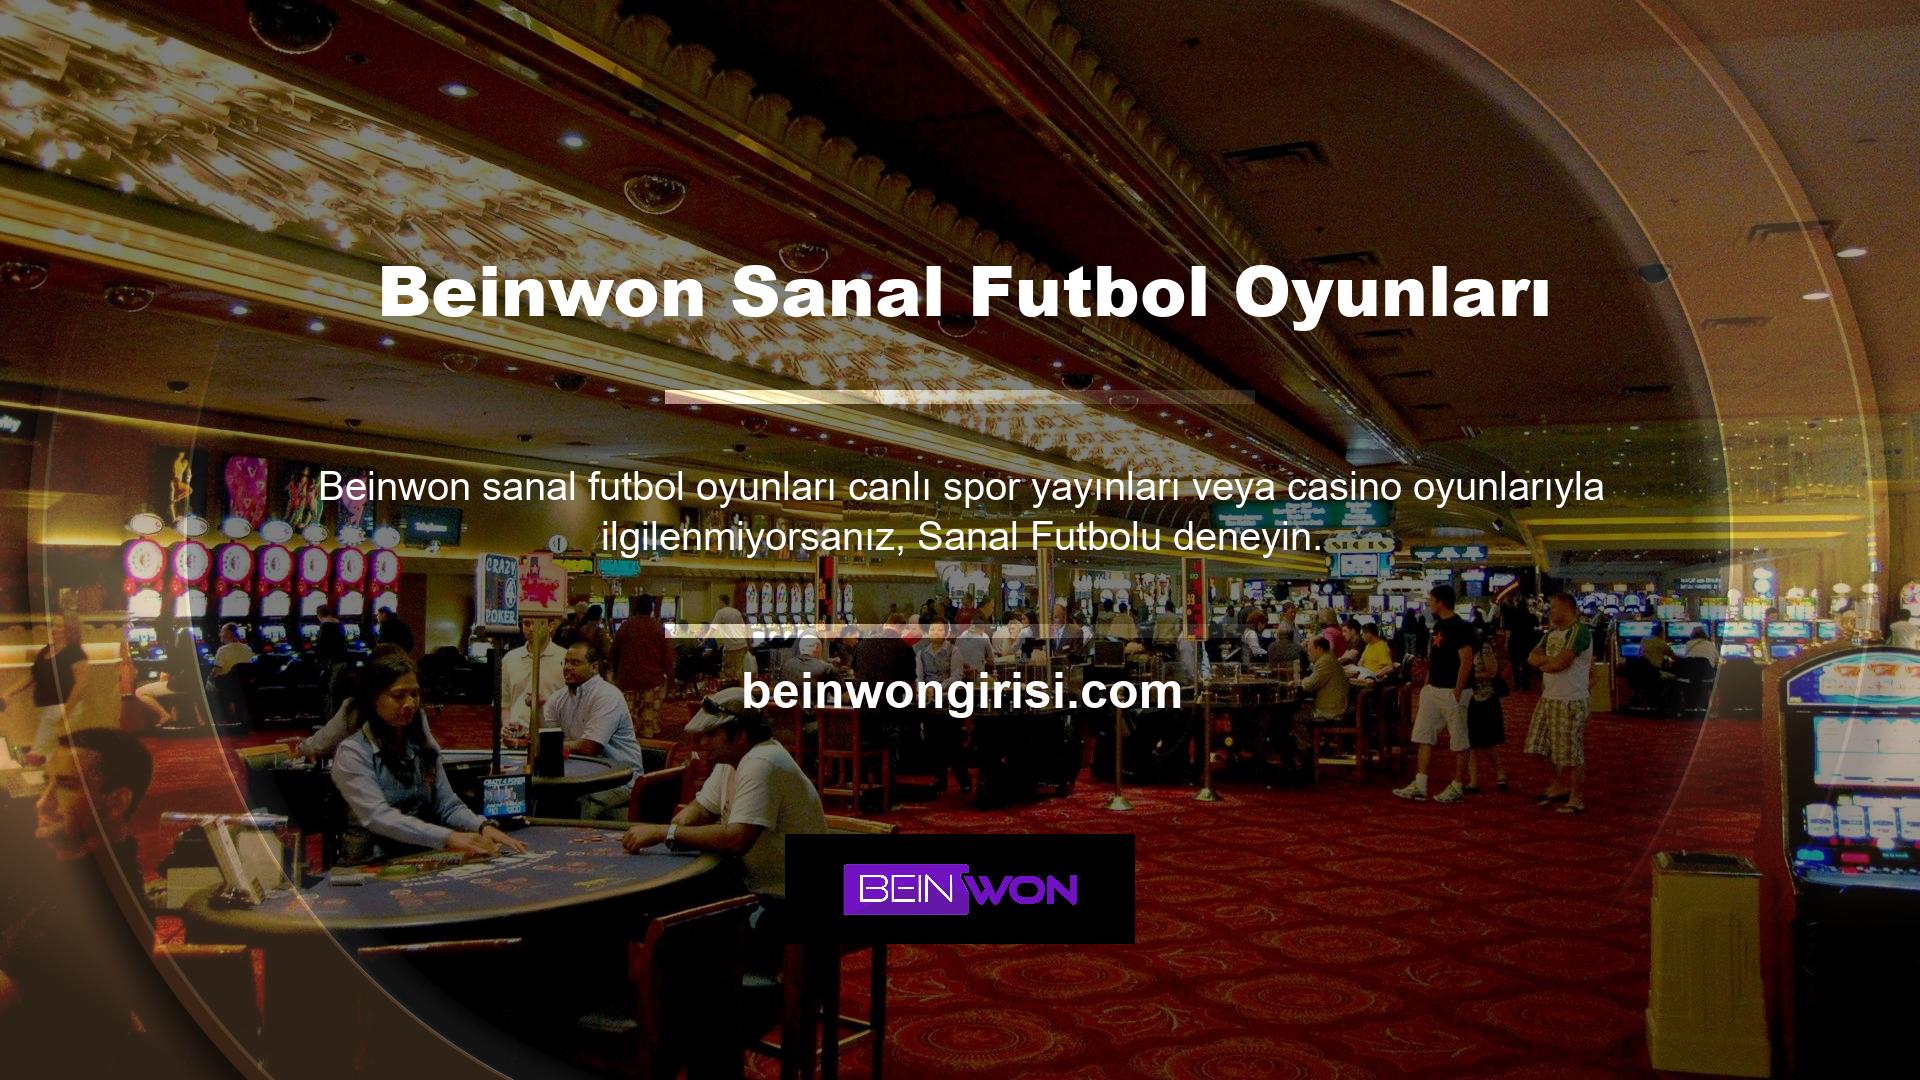 Beinwon sanal oyunlarındaki yüksek ve çeşitli bahis oranlarından memnun kalacağınıza inanıyoruz